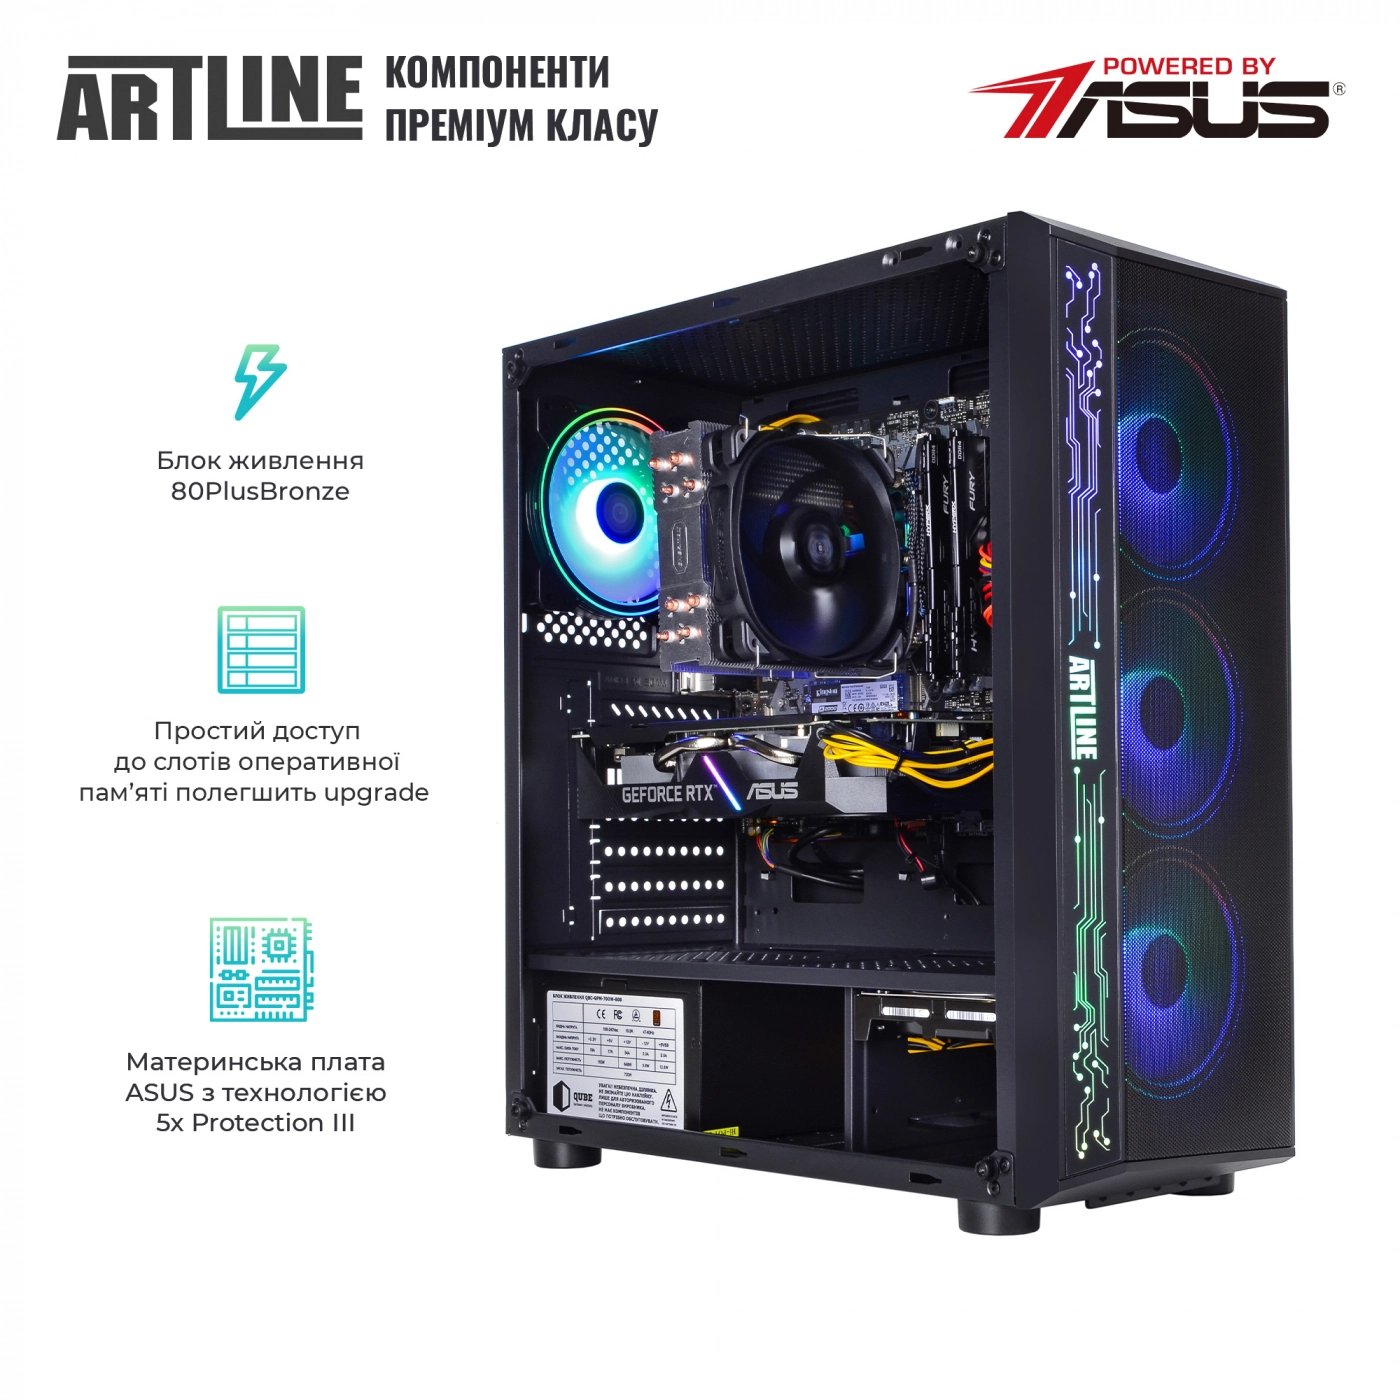 Купить Компьютер ARTLINE Gaming X53v30 - фото 2